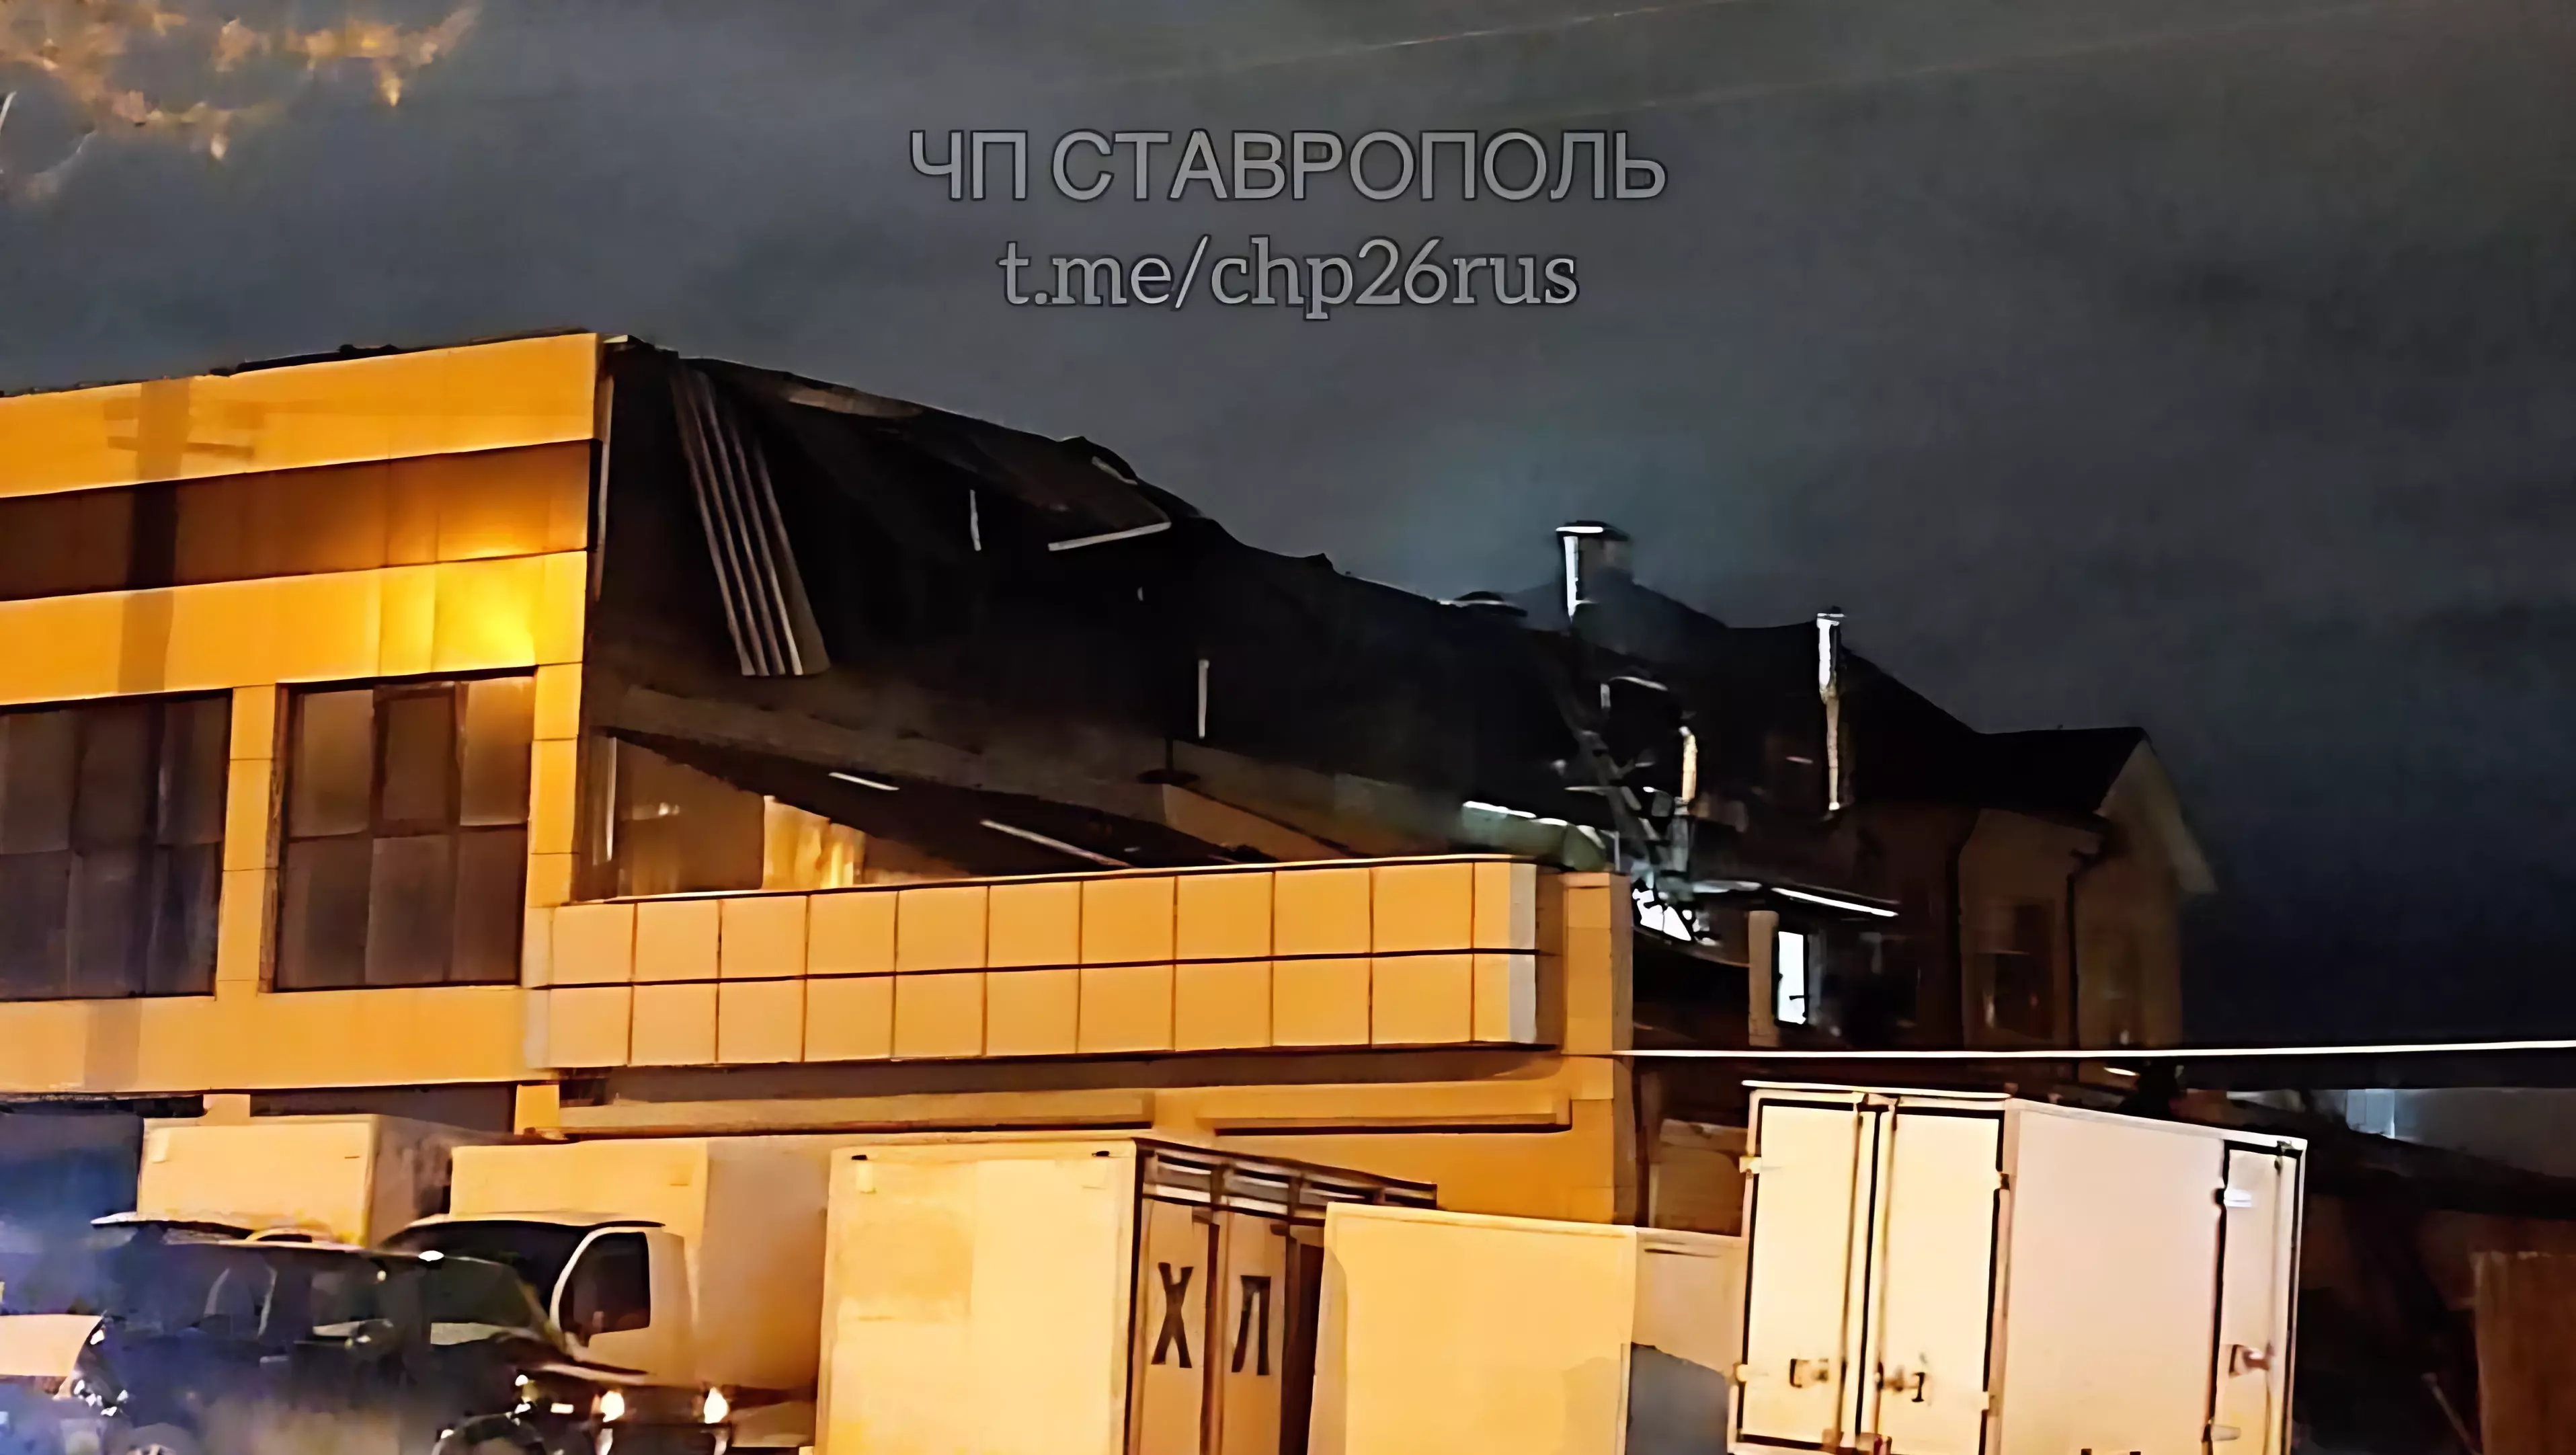 Семь человек пострадали во время взрыва в пекарня Ставрополя